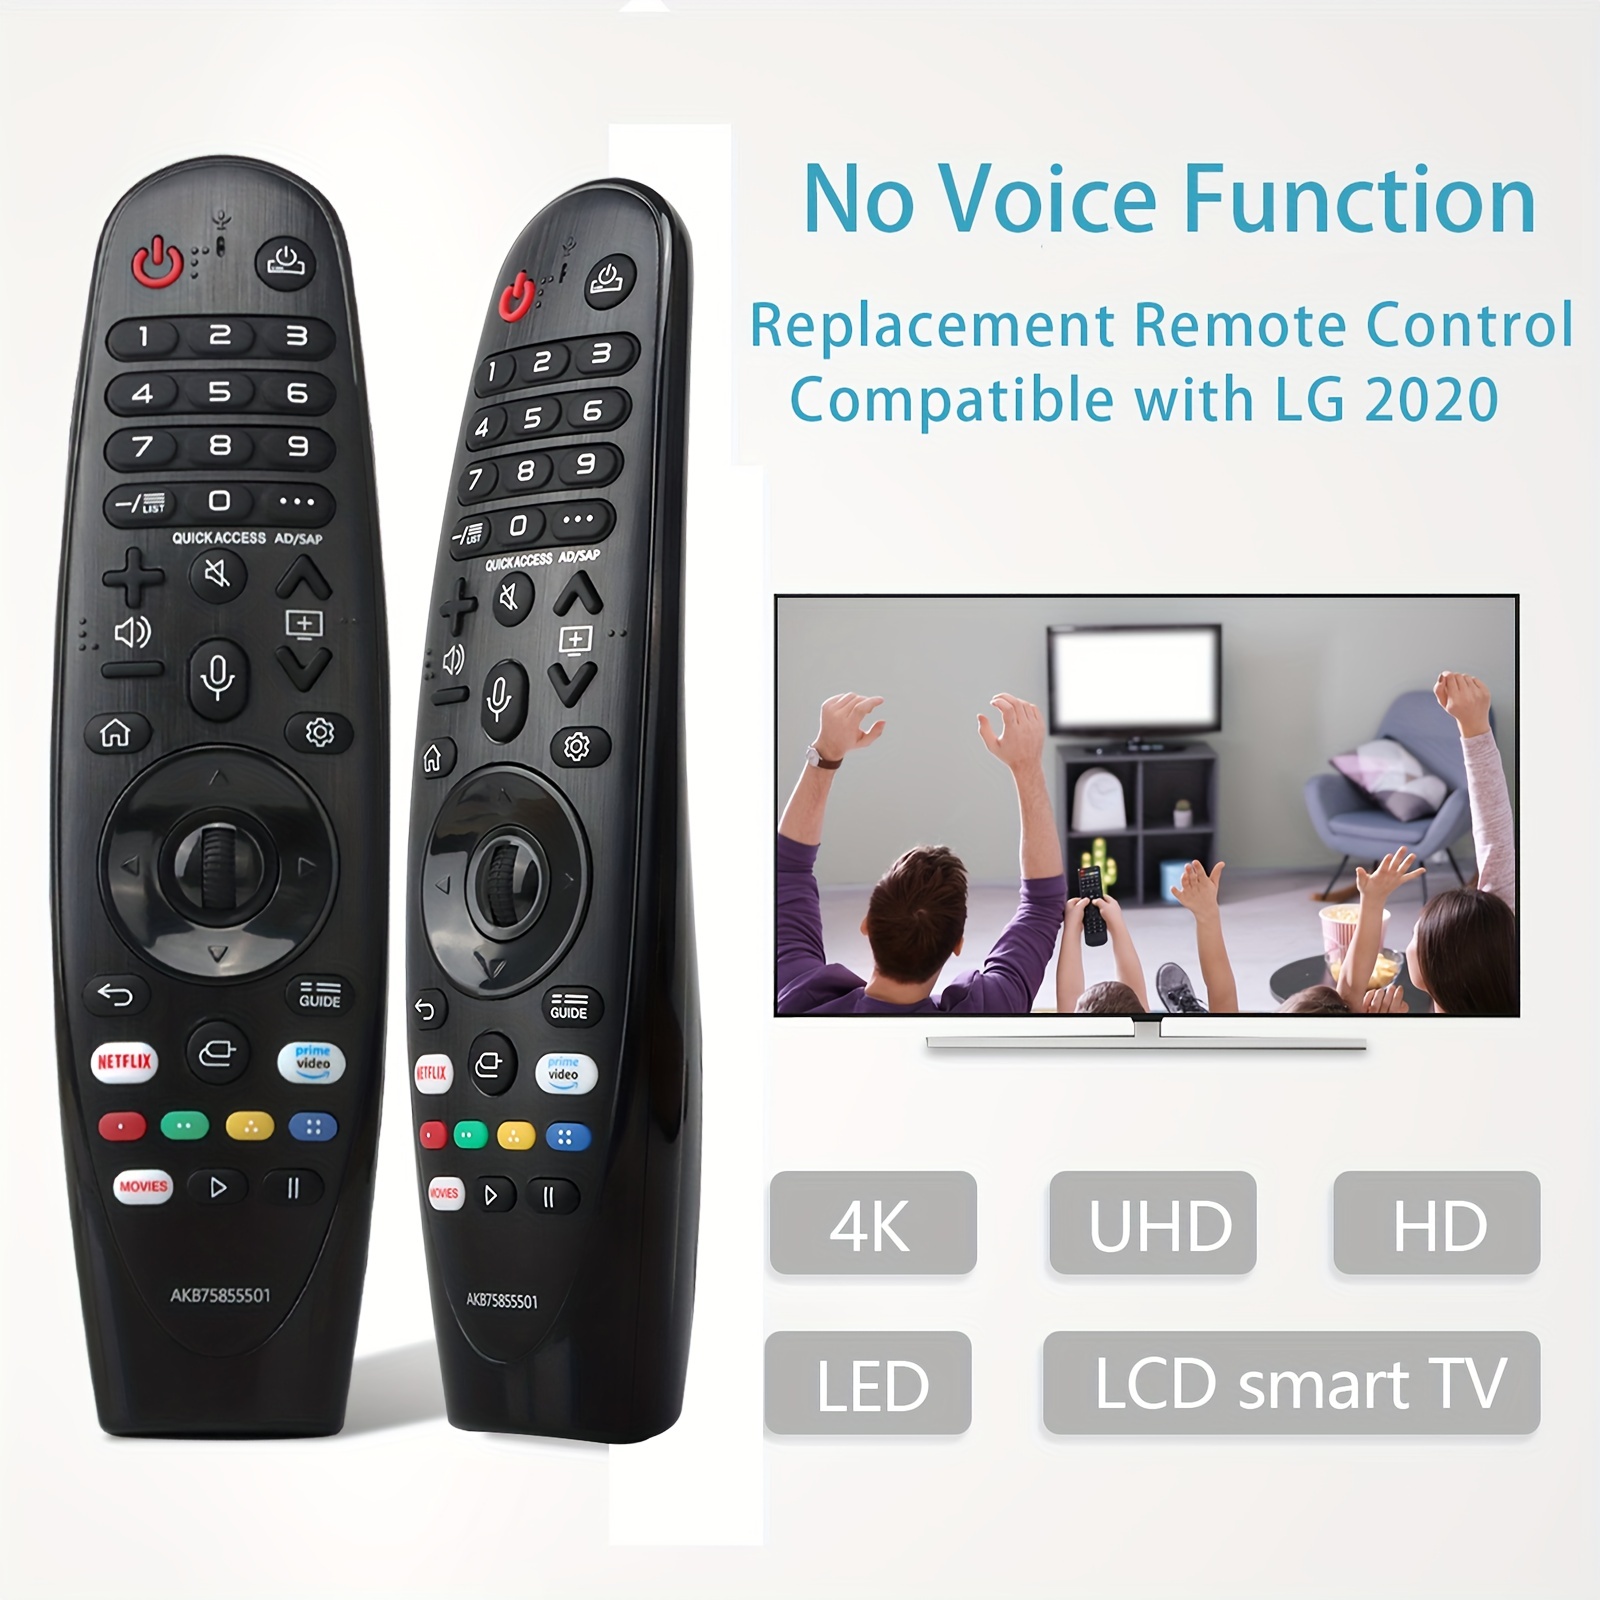  Control remoto universal para LG Smart TV Magic Remote (sin  función de voz, sin función de puntero) compatible con todos los modelos  para LG TV : Electrónica